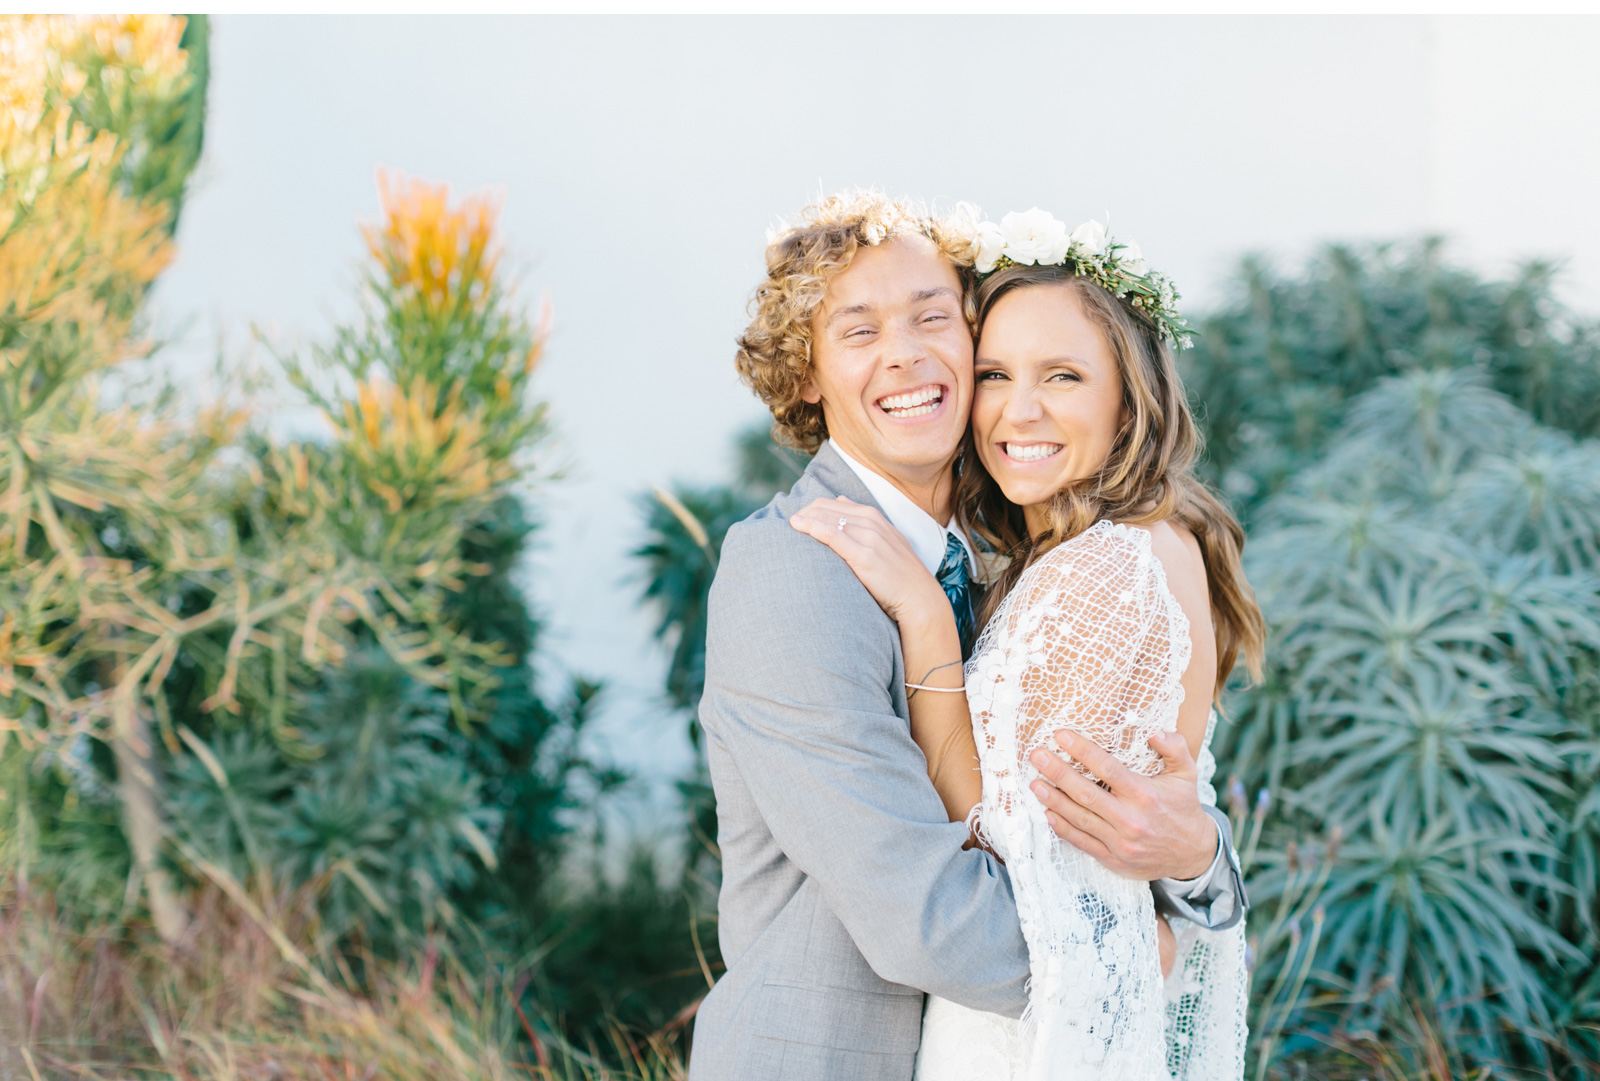 Best-First-Look-Wedding-San-Clemente-Natalie-Schutt-Photography_10.jpg